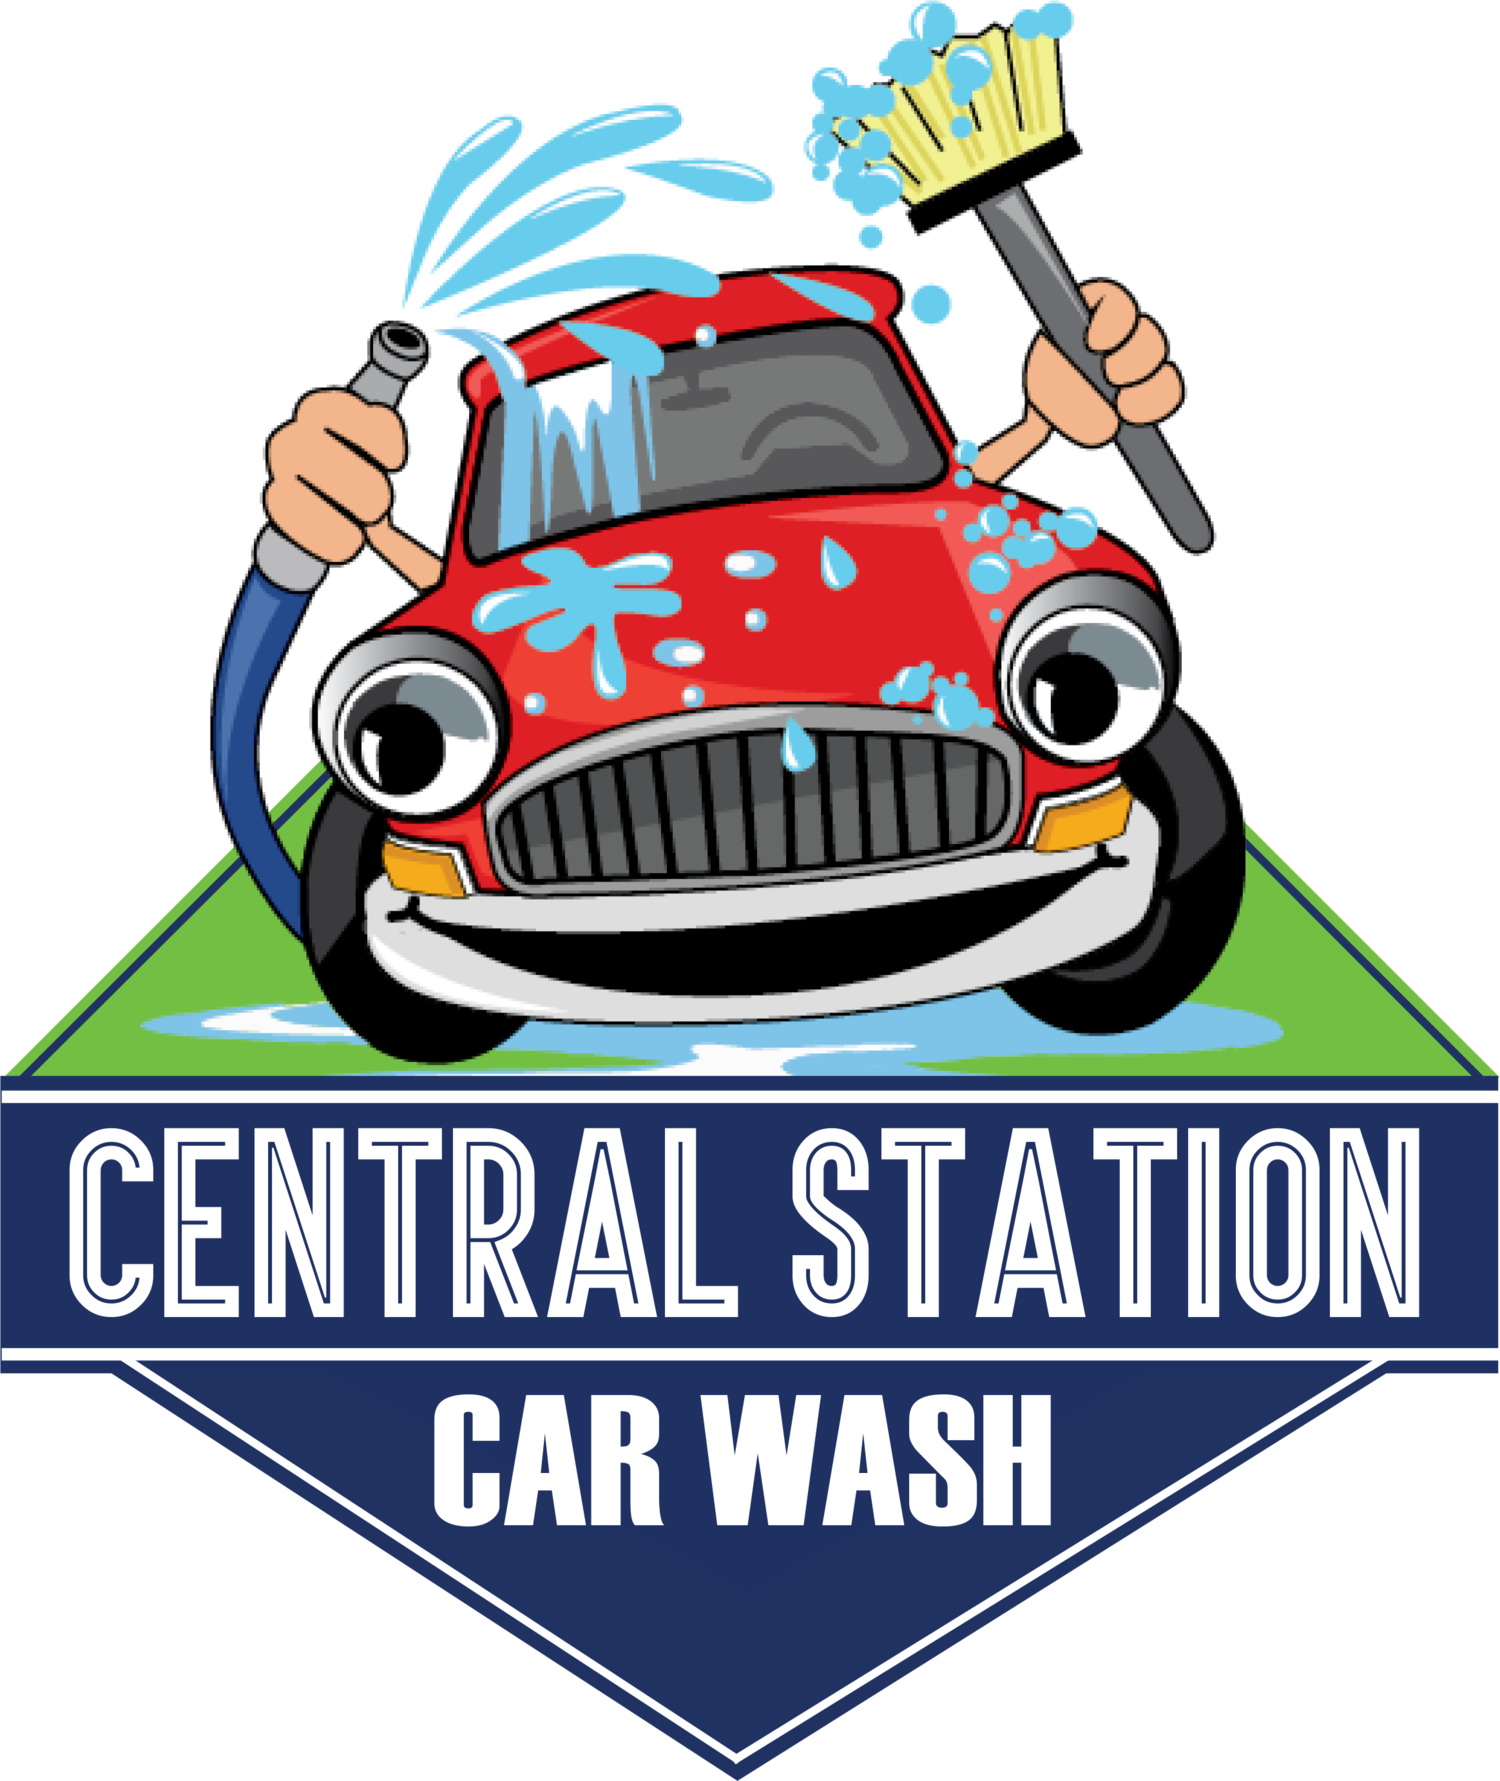 Central Station Car Wash